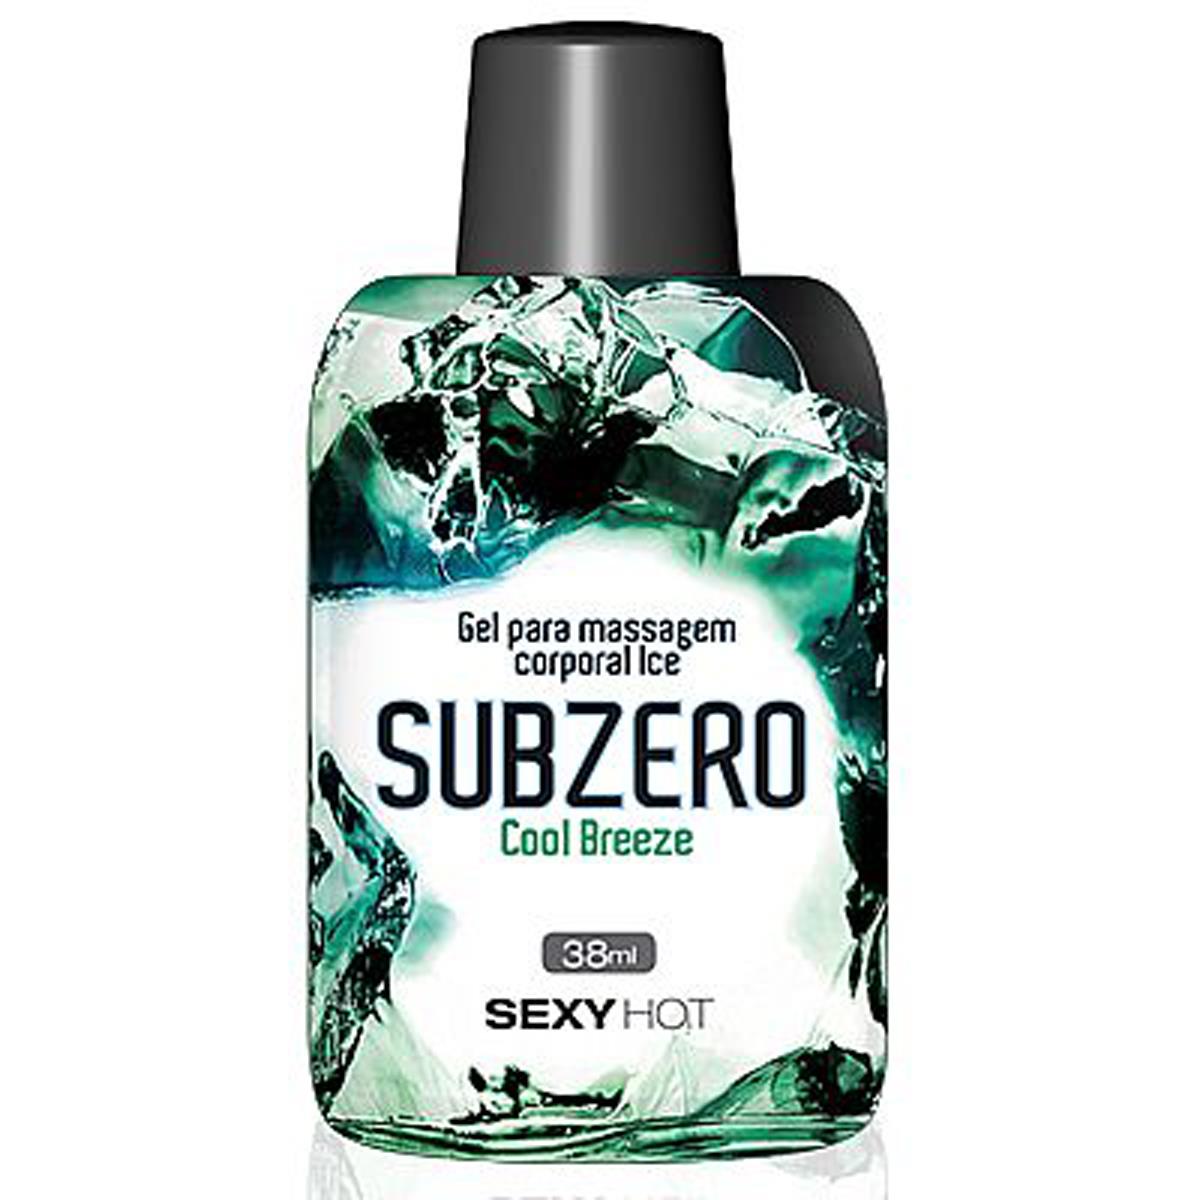 Subzero Cool Breeze 38ml Sexy Hot - Miess